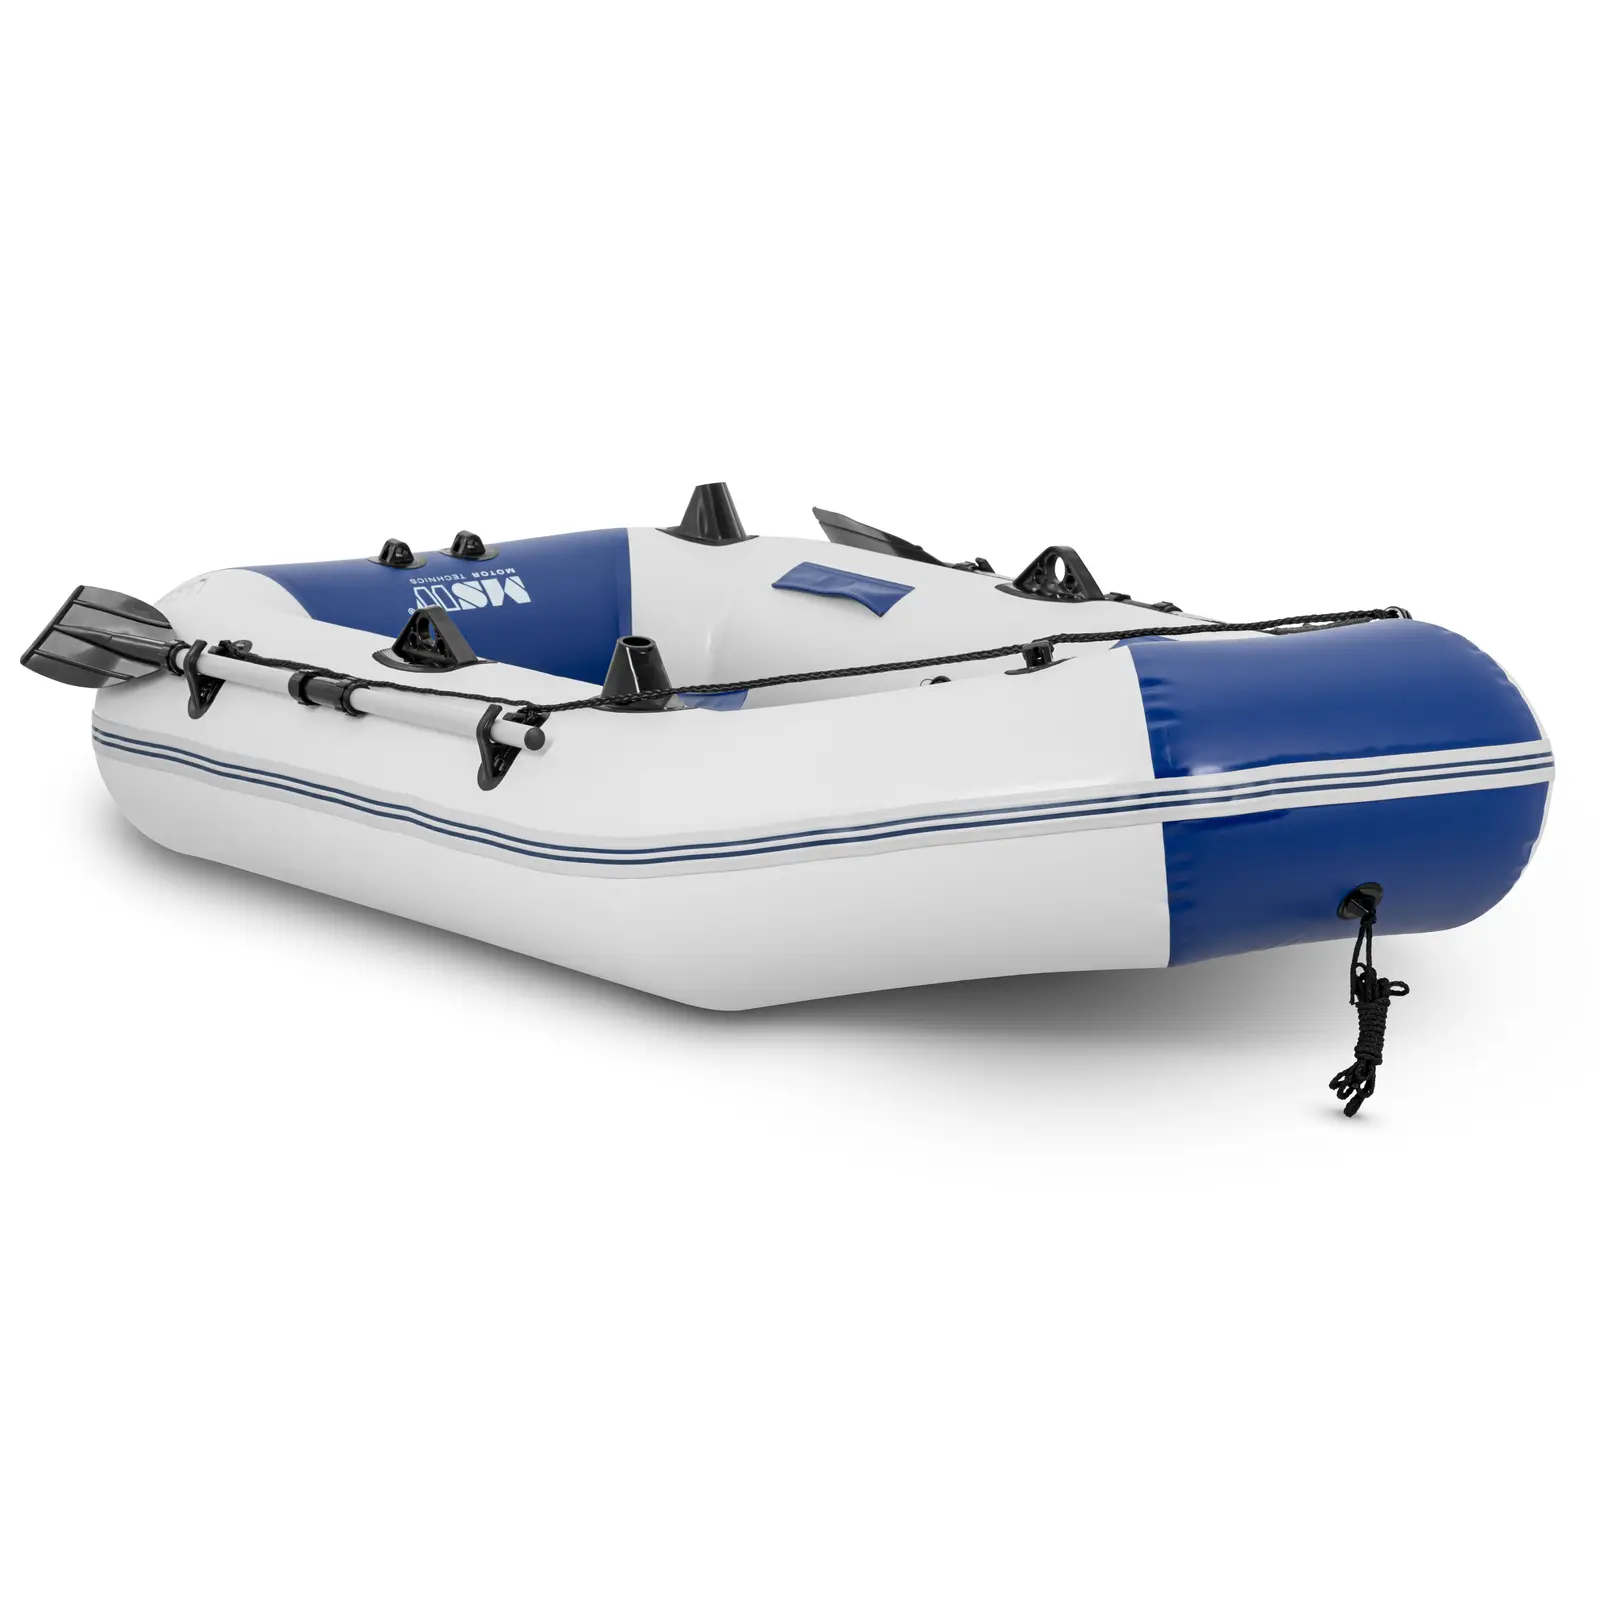 Barca neumática - azul/blanca - 235 kg - soporte para caña de pescar - 3 personas